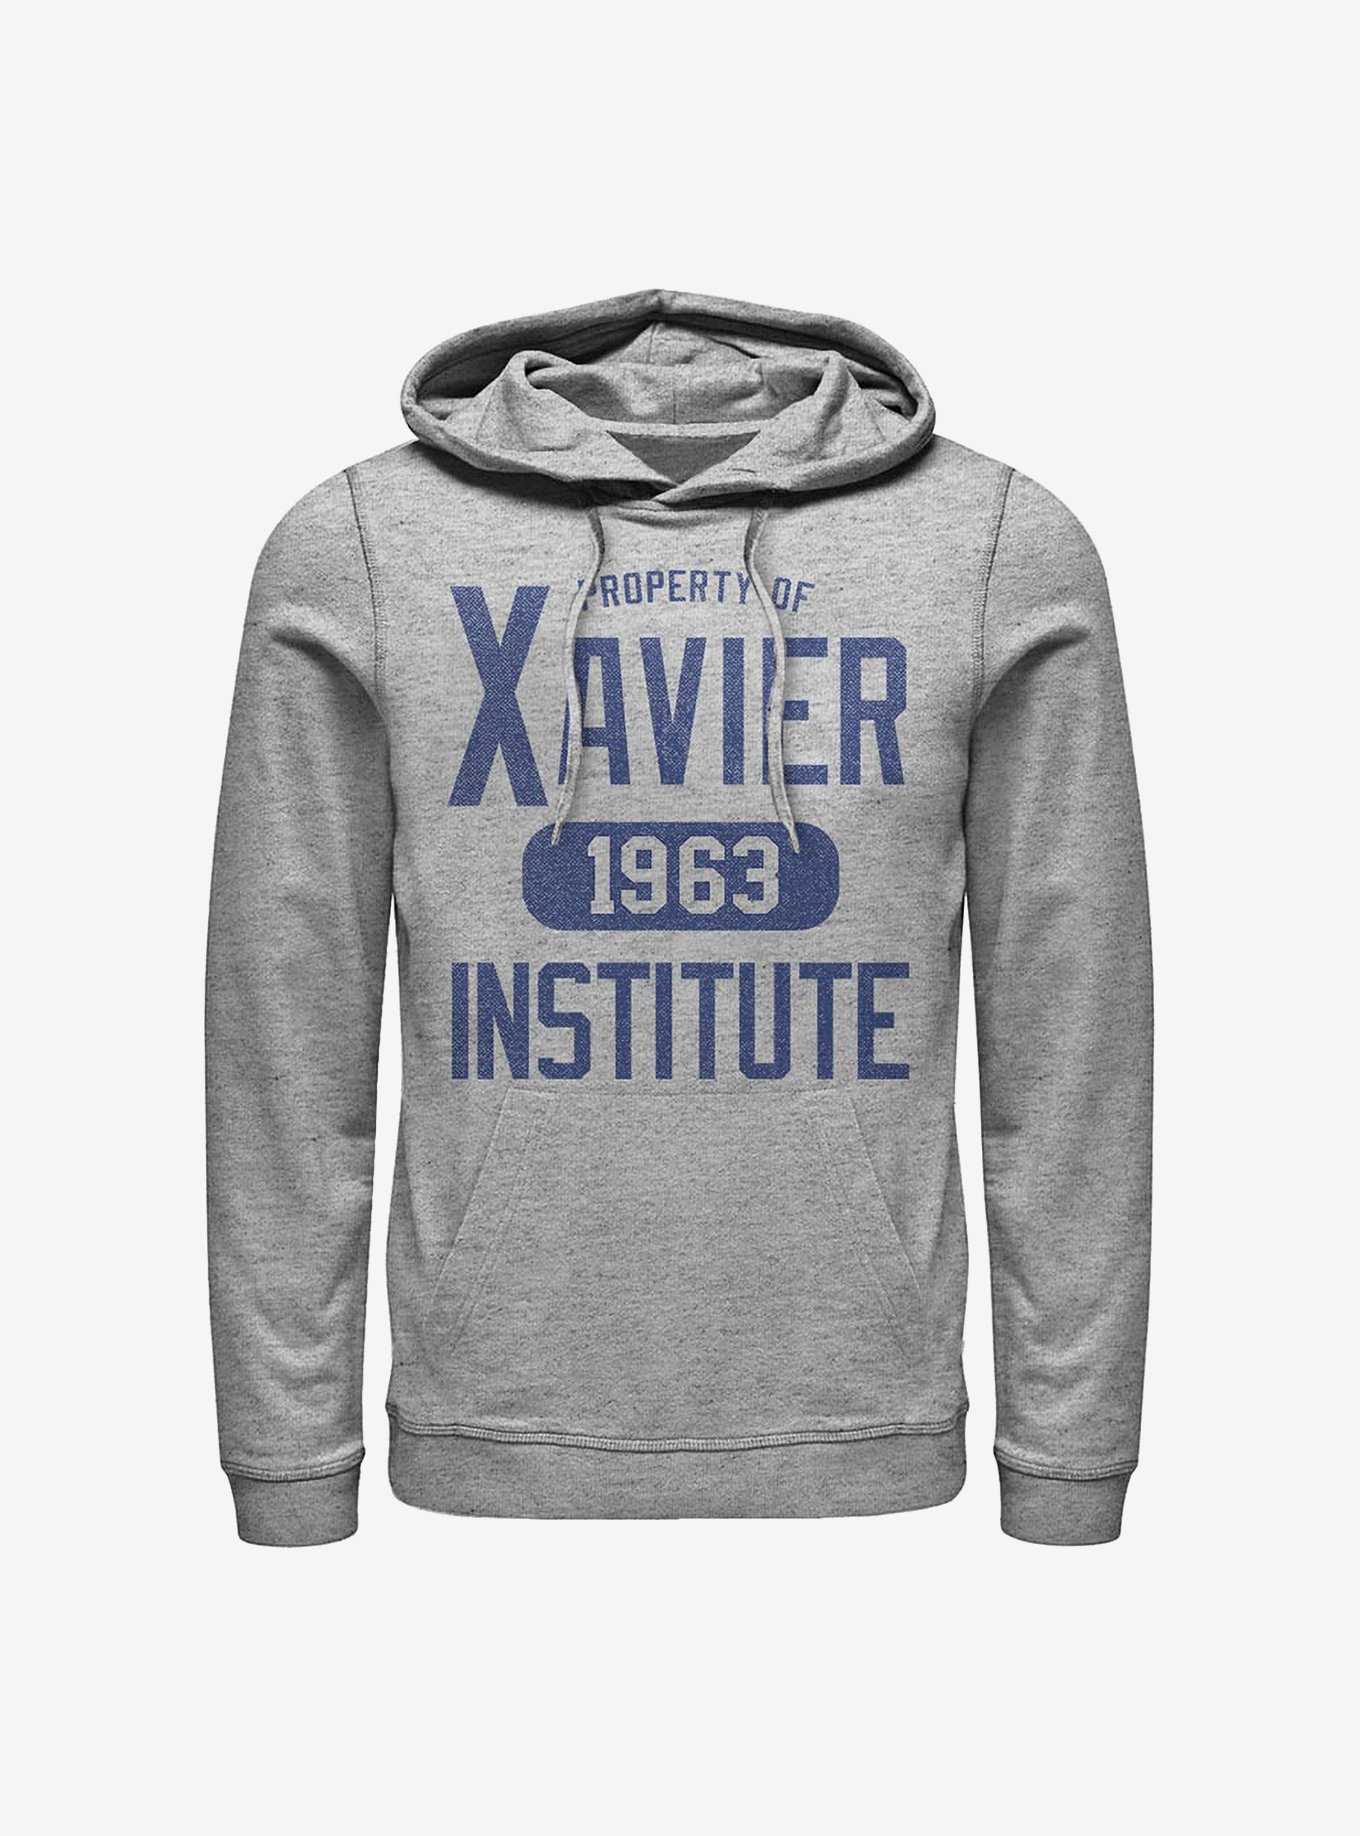 Marvel X-Men Varsity Property Of Xavier Hoodie, , hi-res